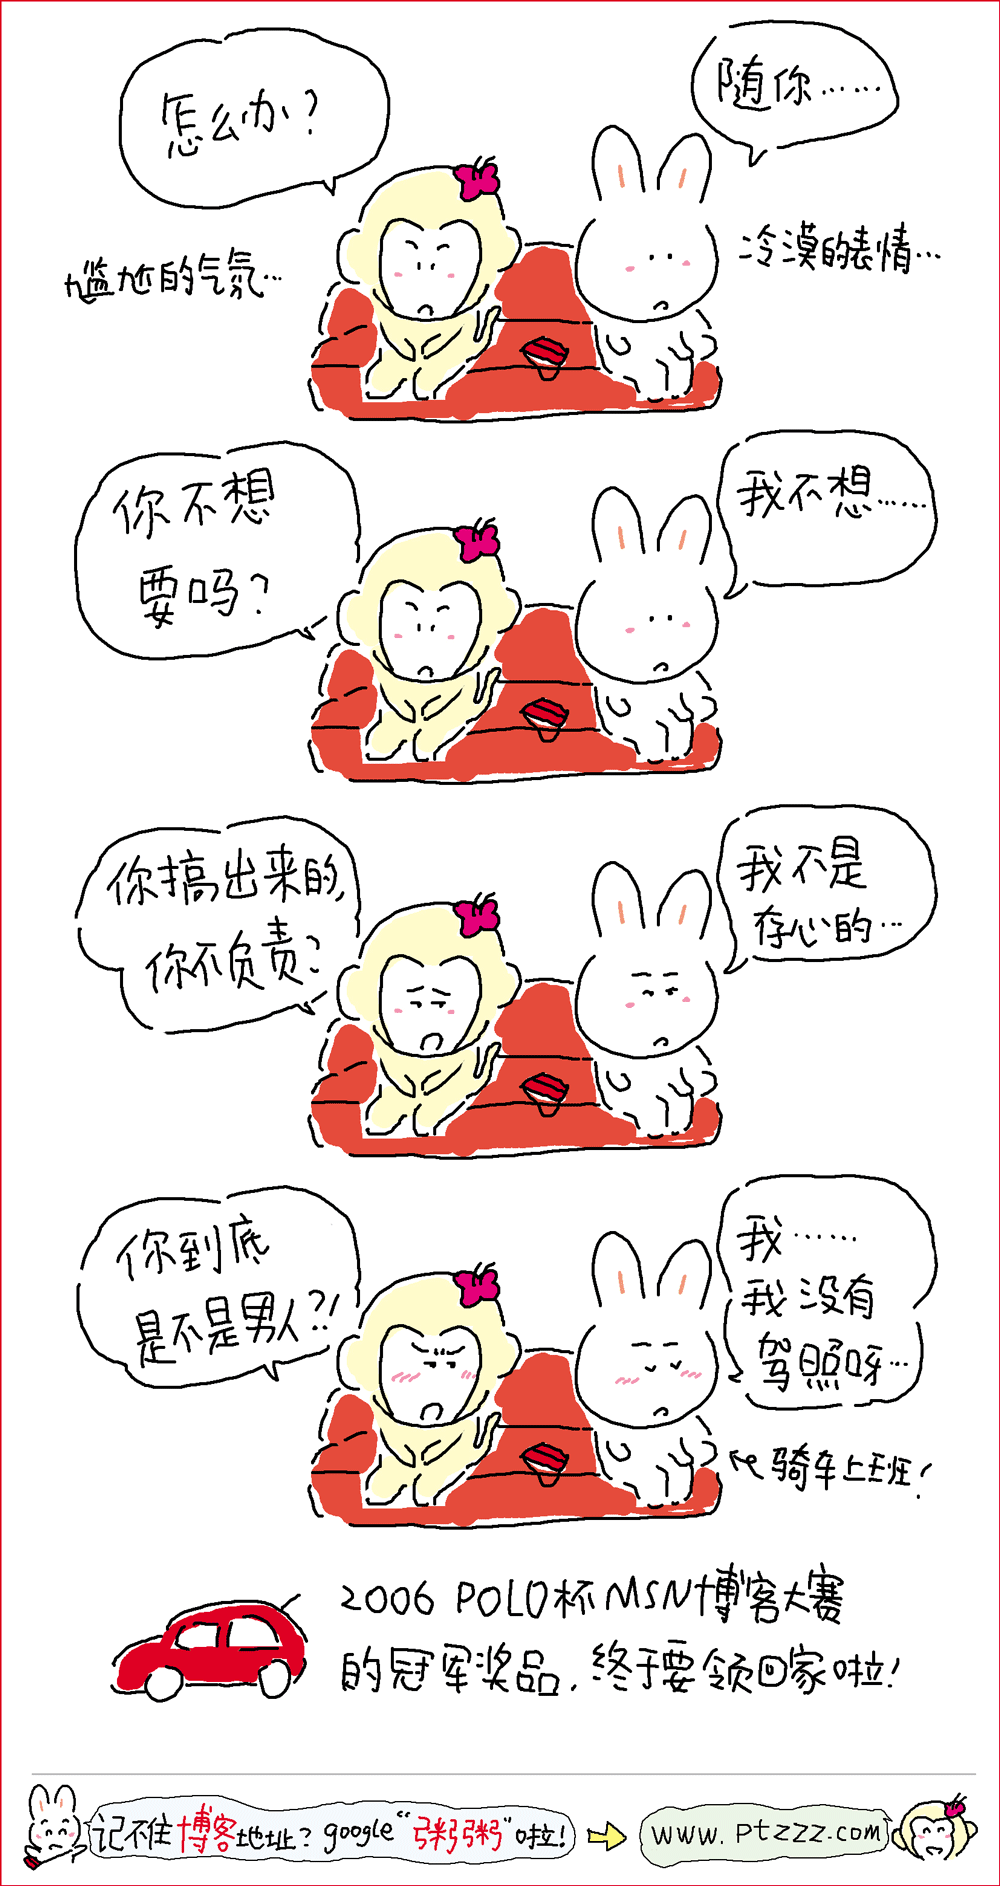 【小学生禁入】搞笑漫画之生活感悟漫画--胖兔子粥粥 第八期